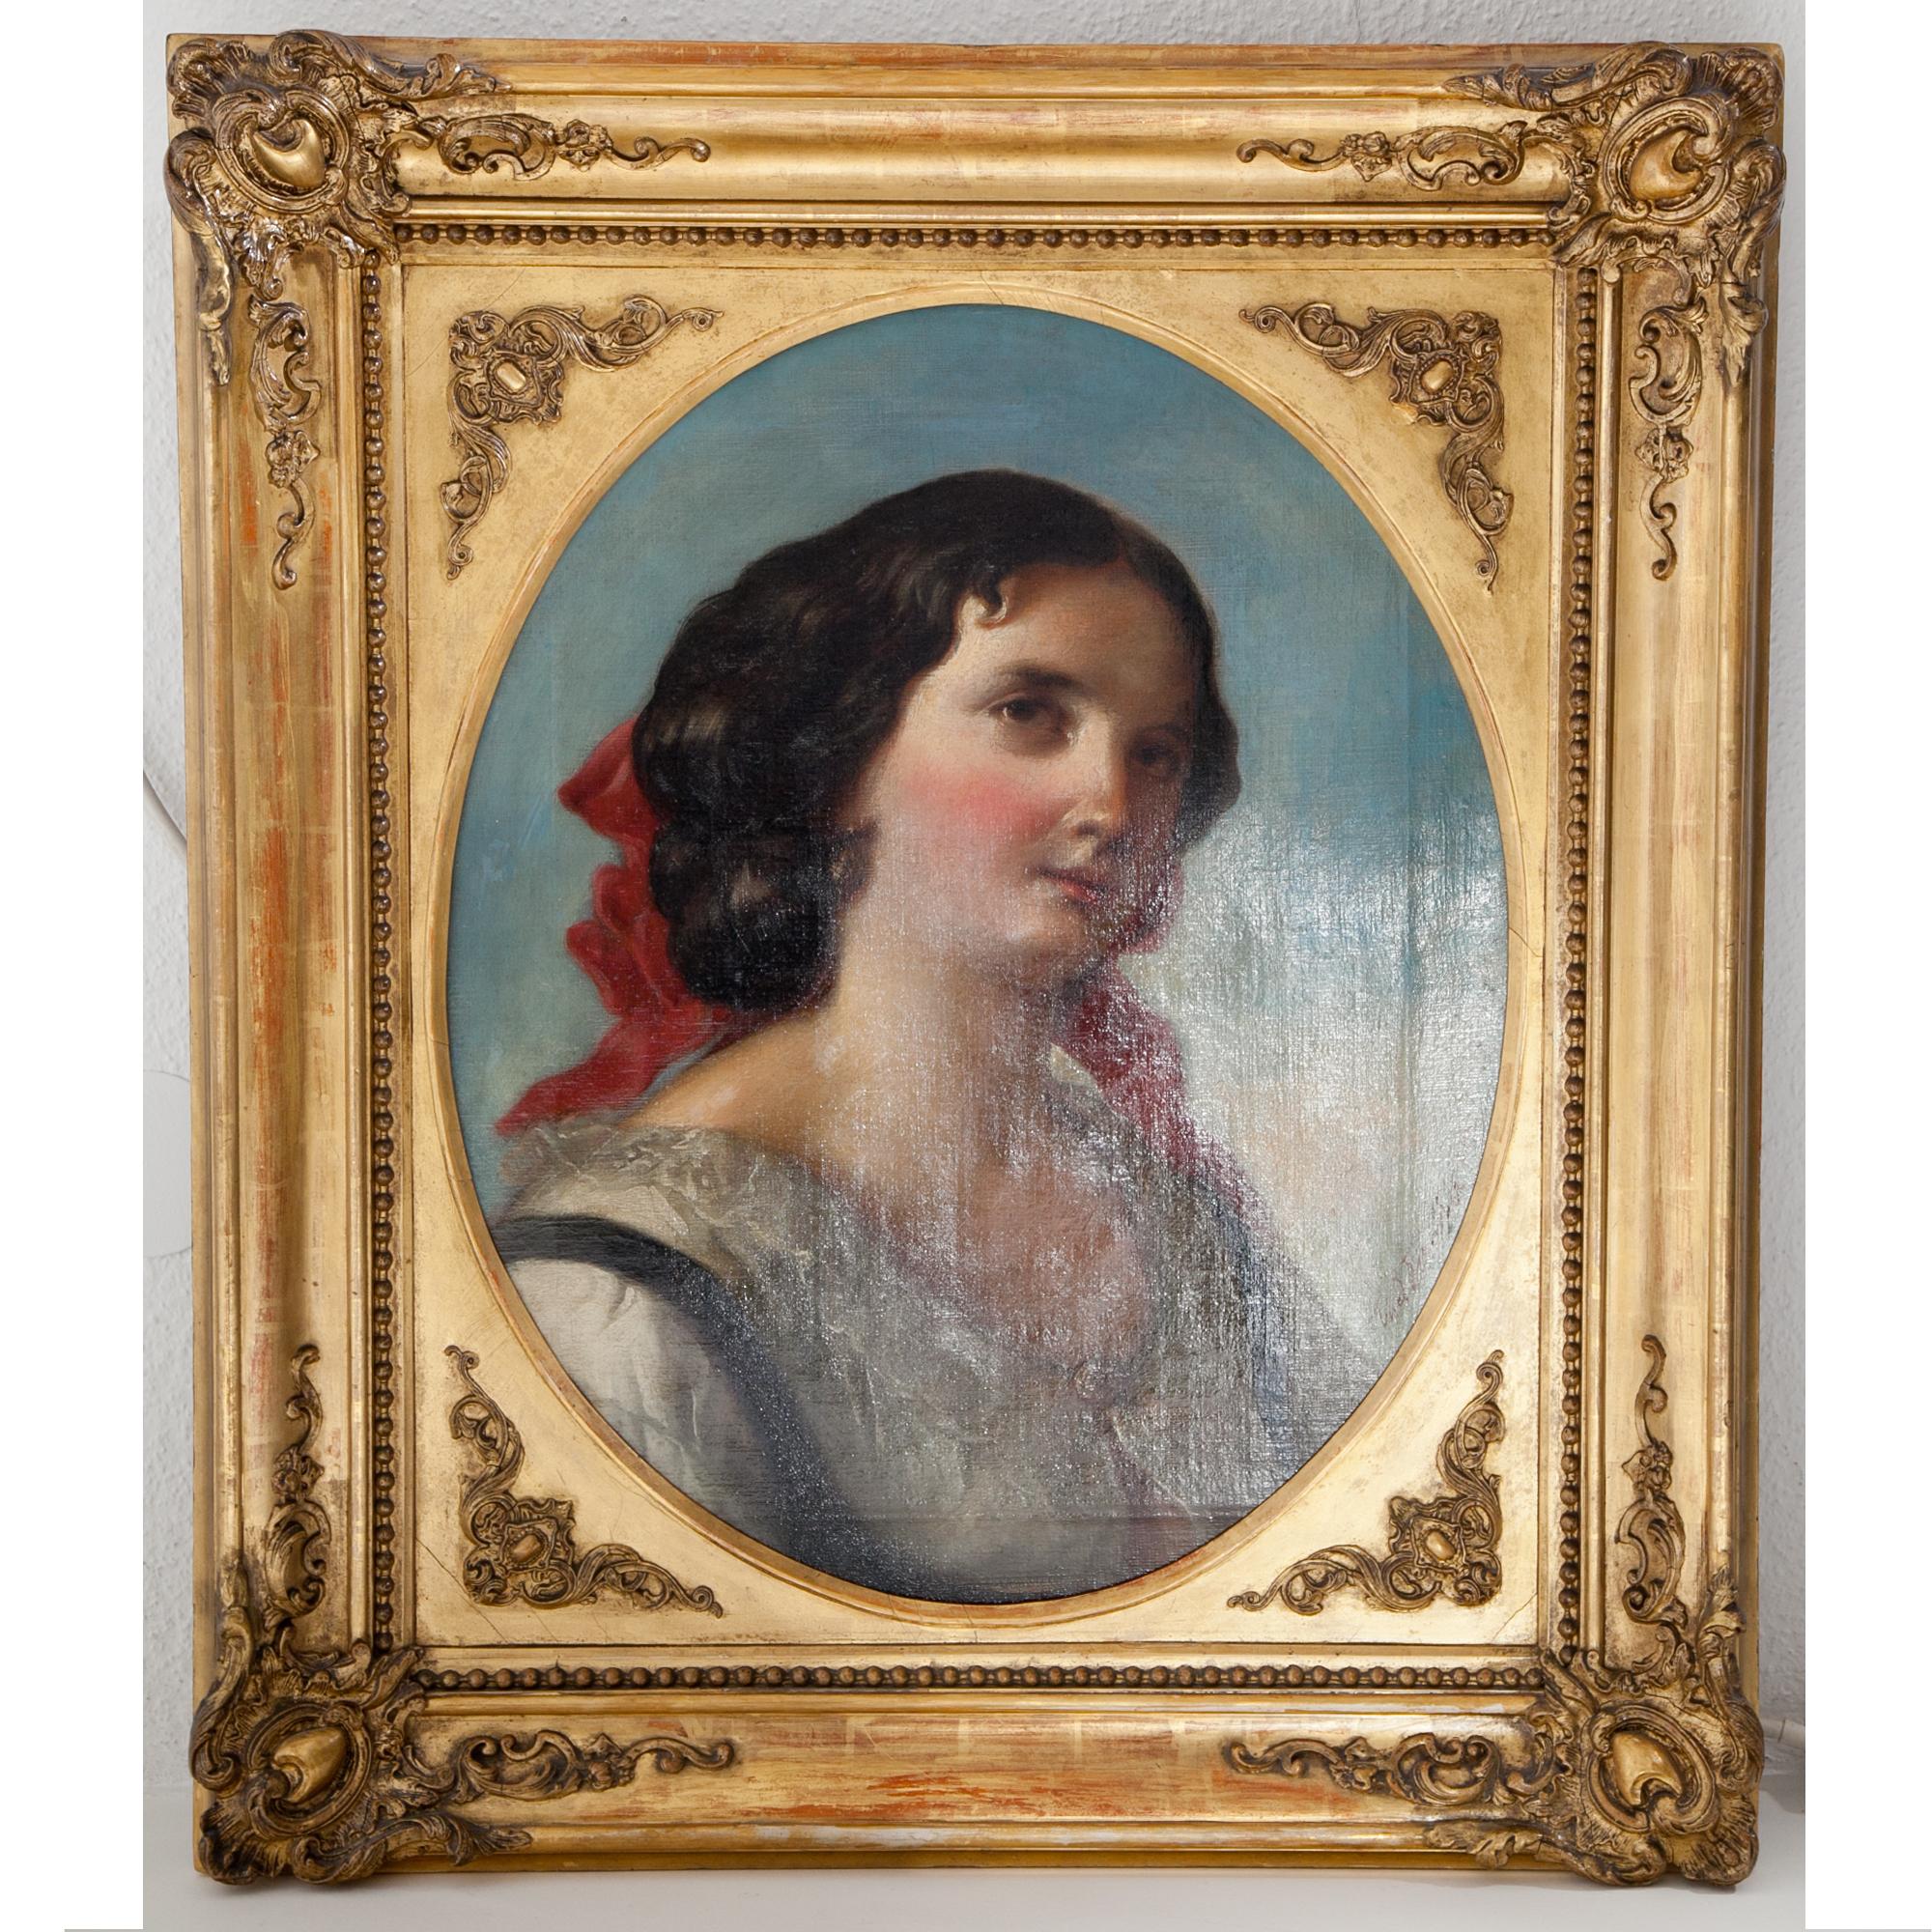 Porträt einer jungen Frau in weißer Spitzenbluse, mit einer roten Schleife im dunklen, lockigen Haar. Sie ist vor einem diffusen blauen Hintergrund in Dreiviertelansicht platziert. Öl auf Leinwand, gerahmt in einem goldenen patinierten Rahmen mit